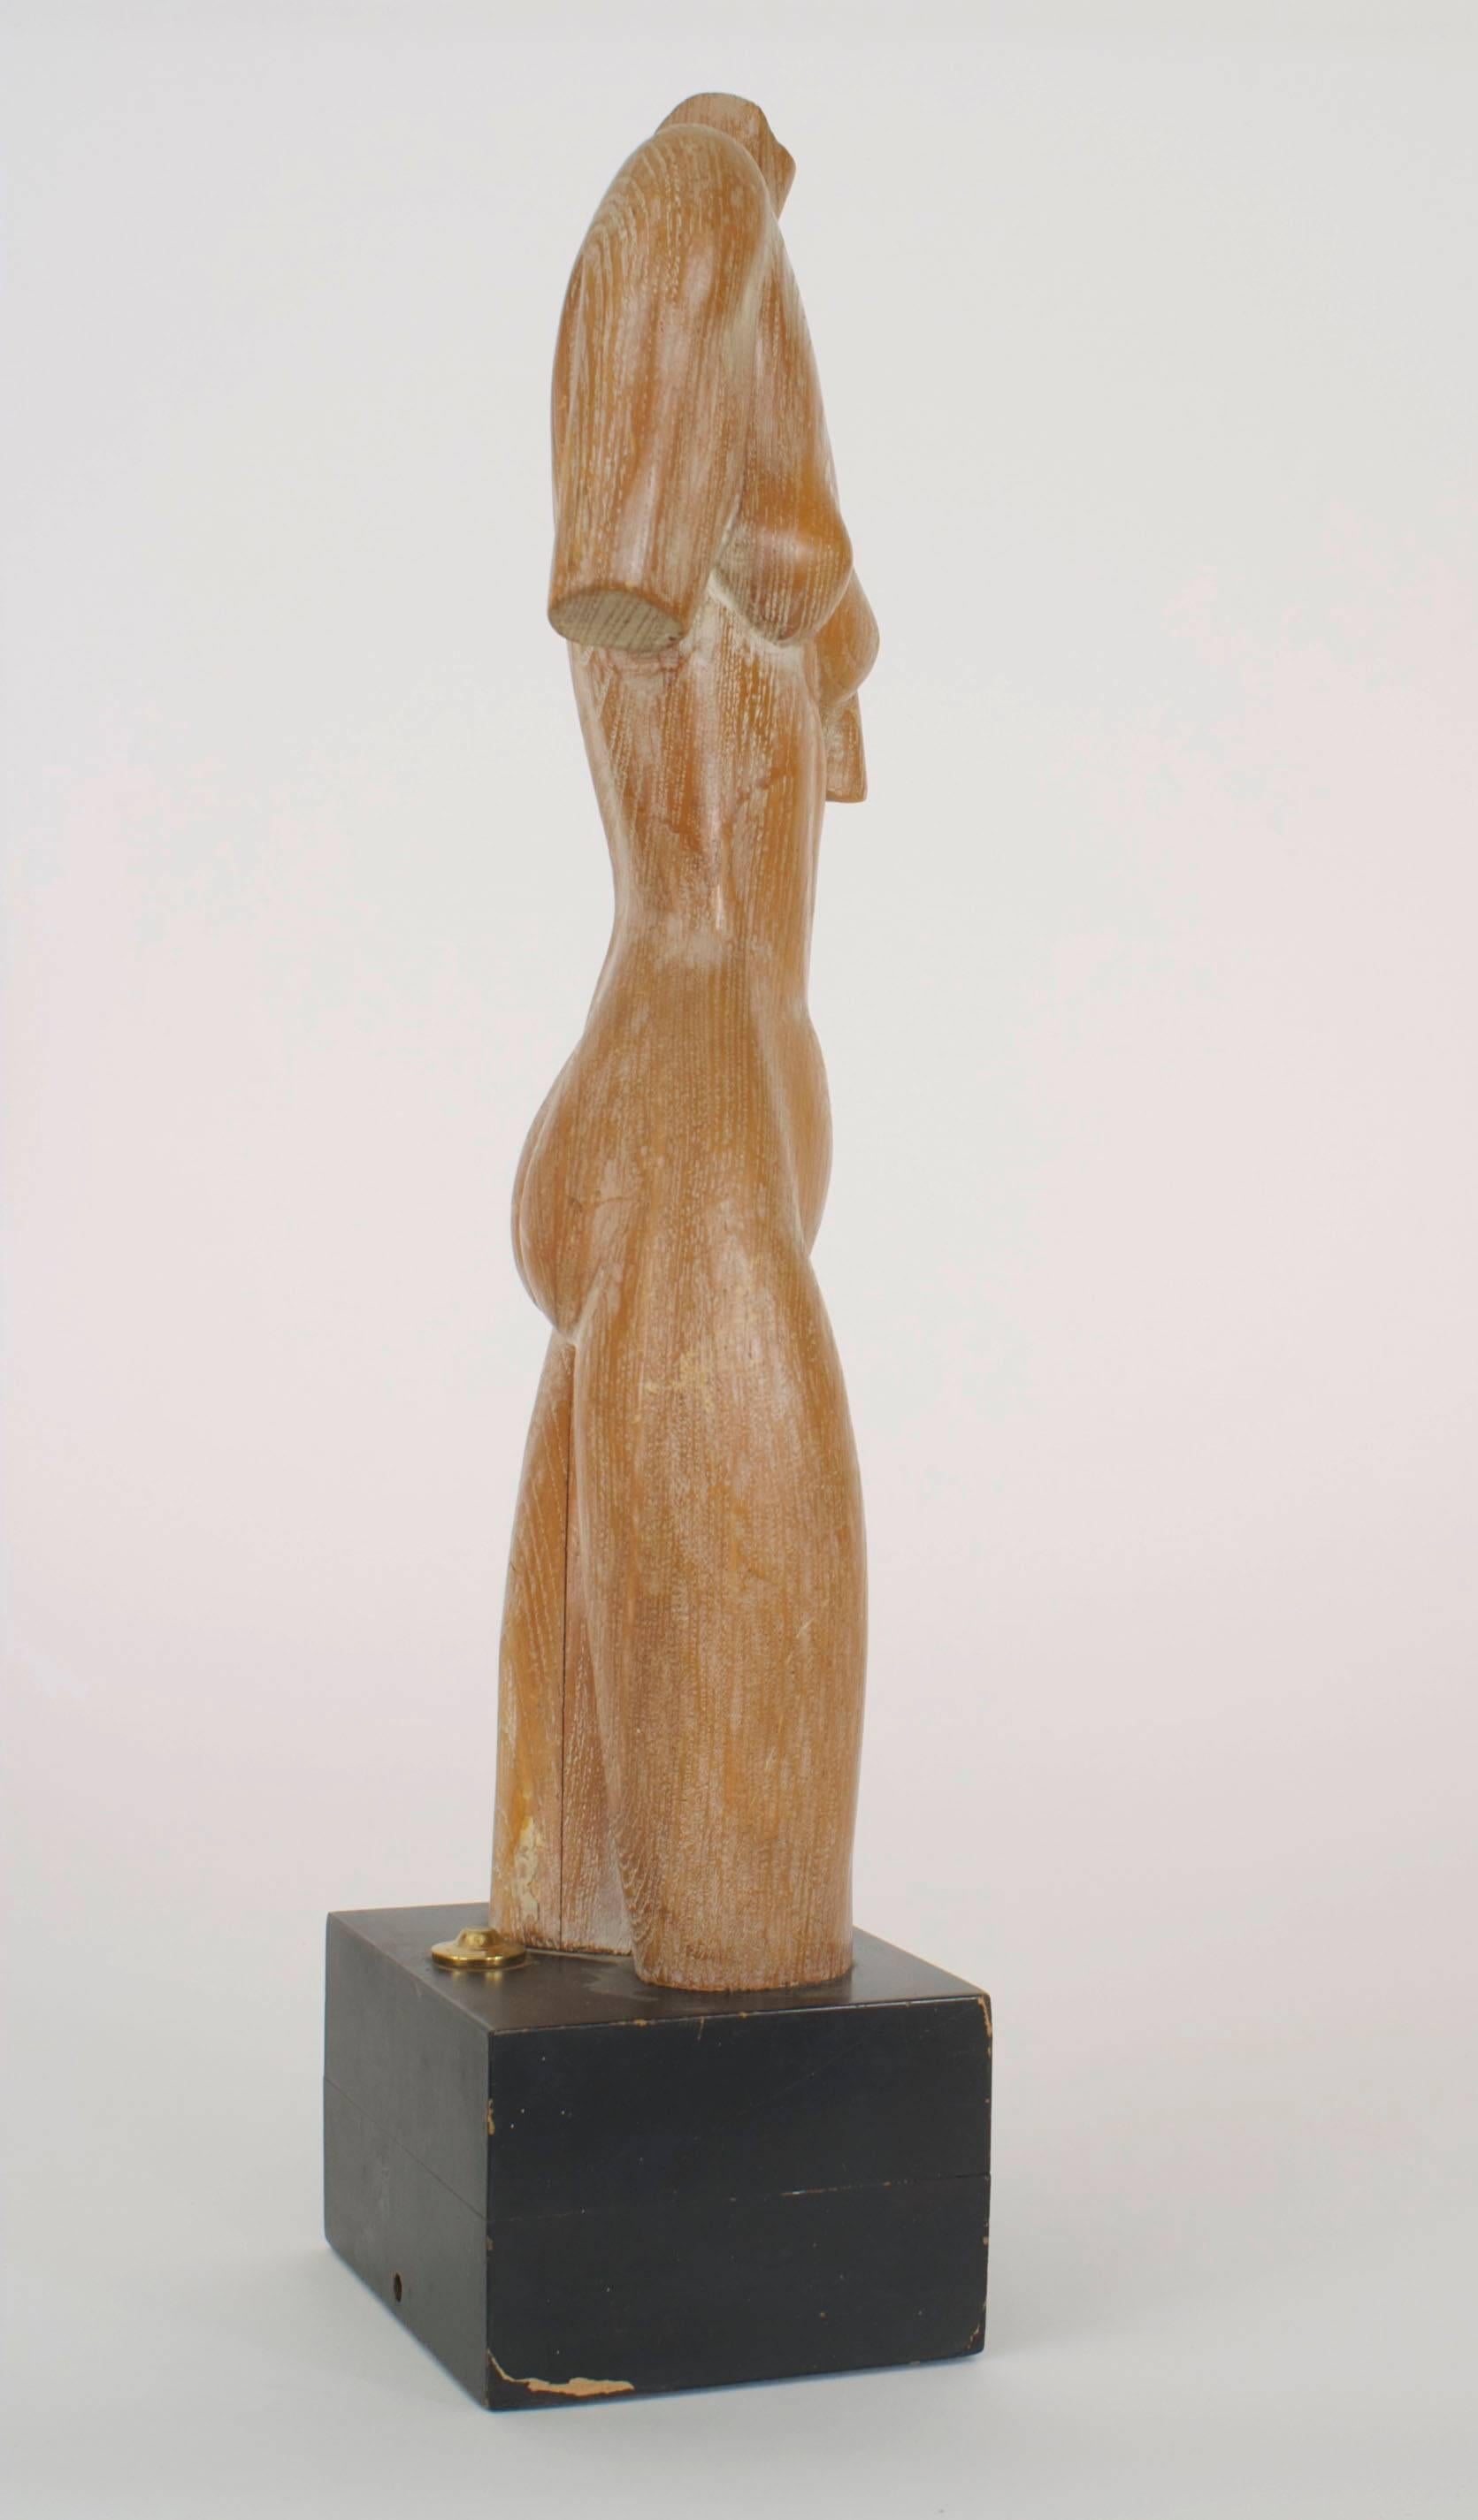 Torse de femme nu stylisé sculpté en chêne chaulé et monté sur une base carrée ébonisée
